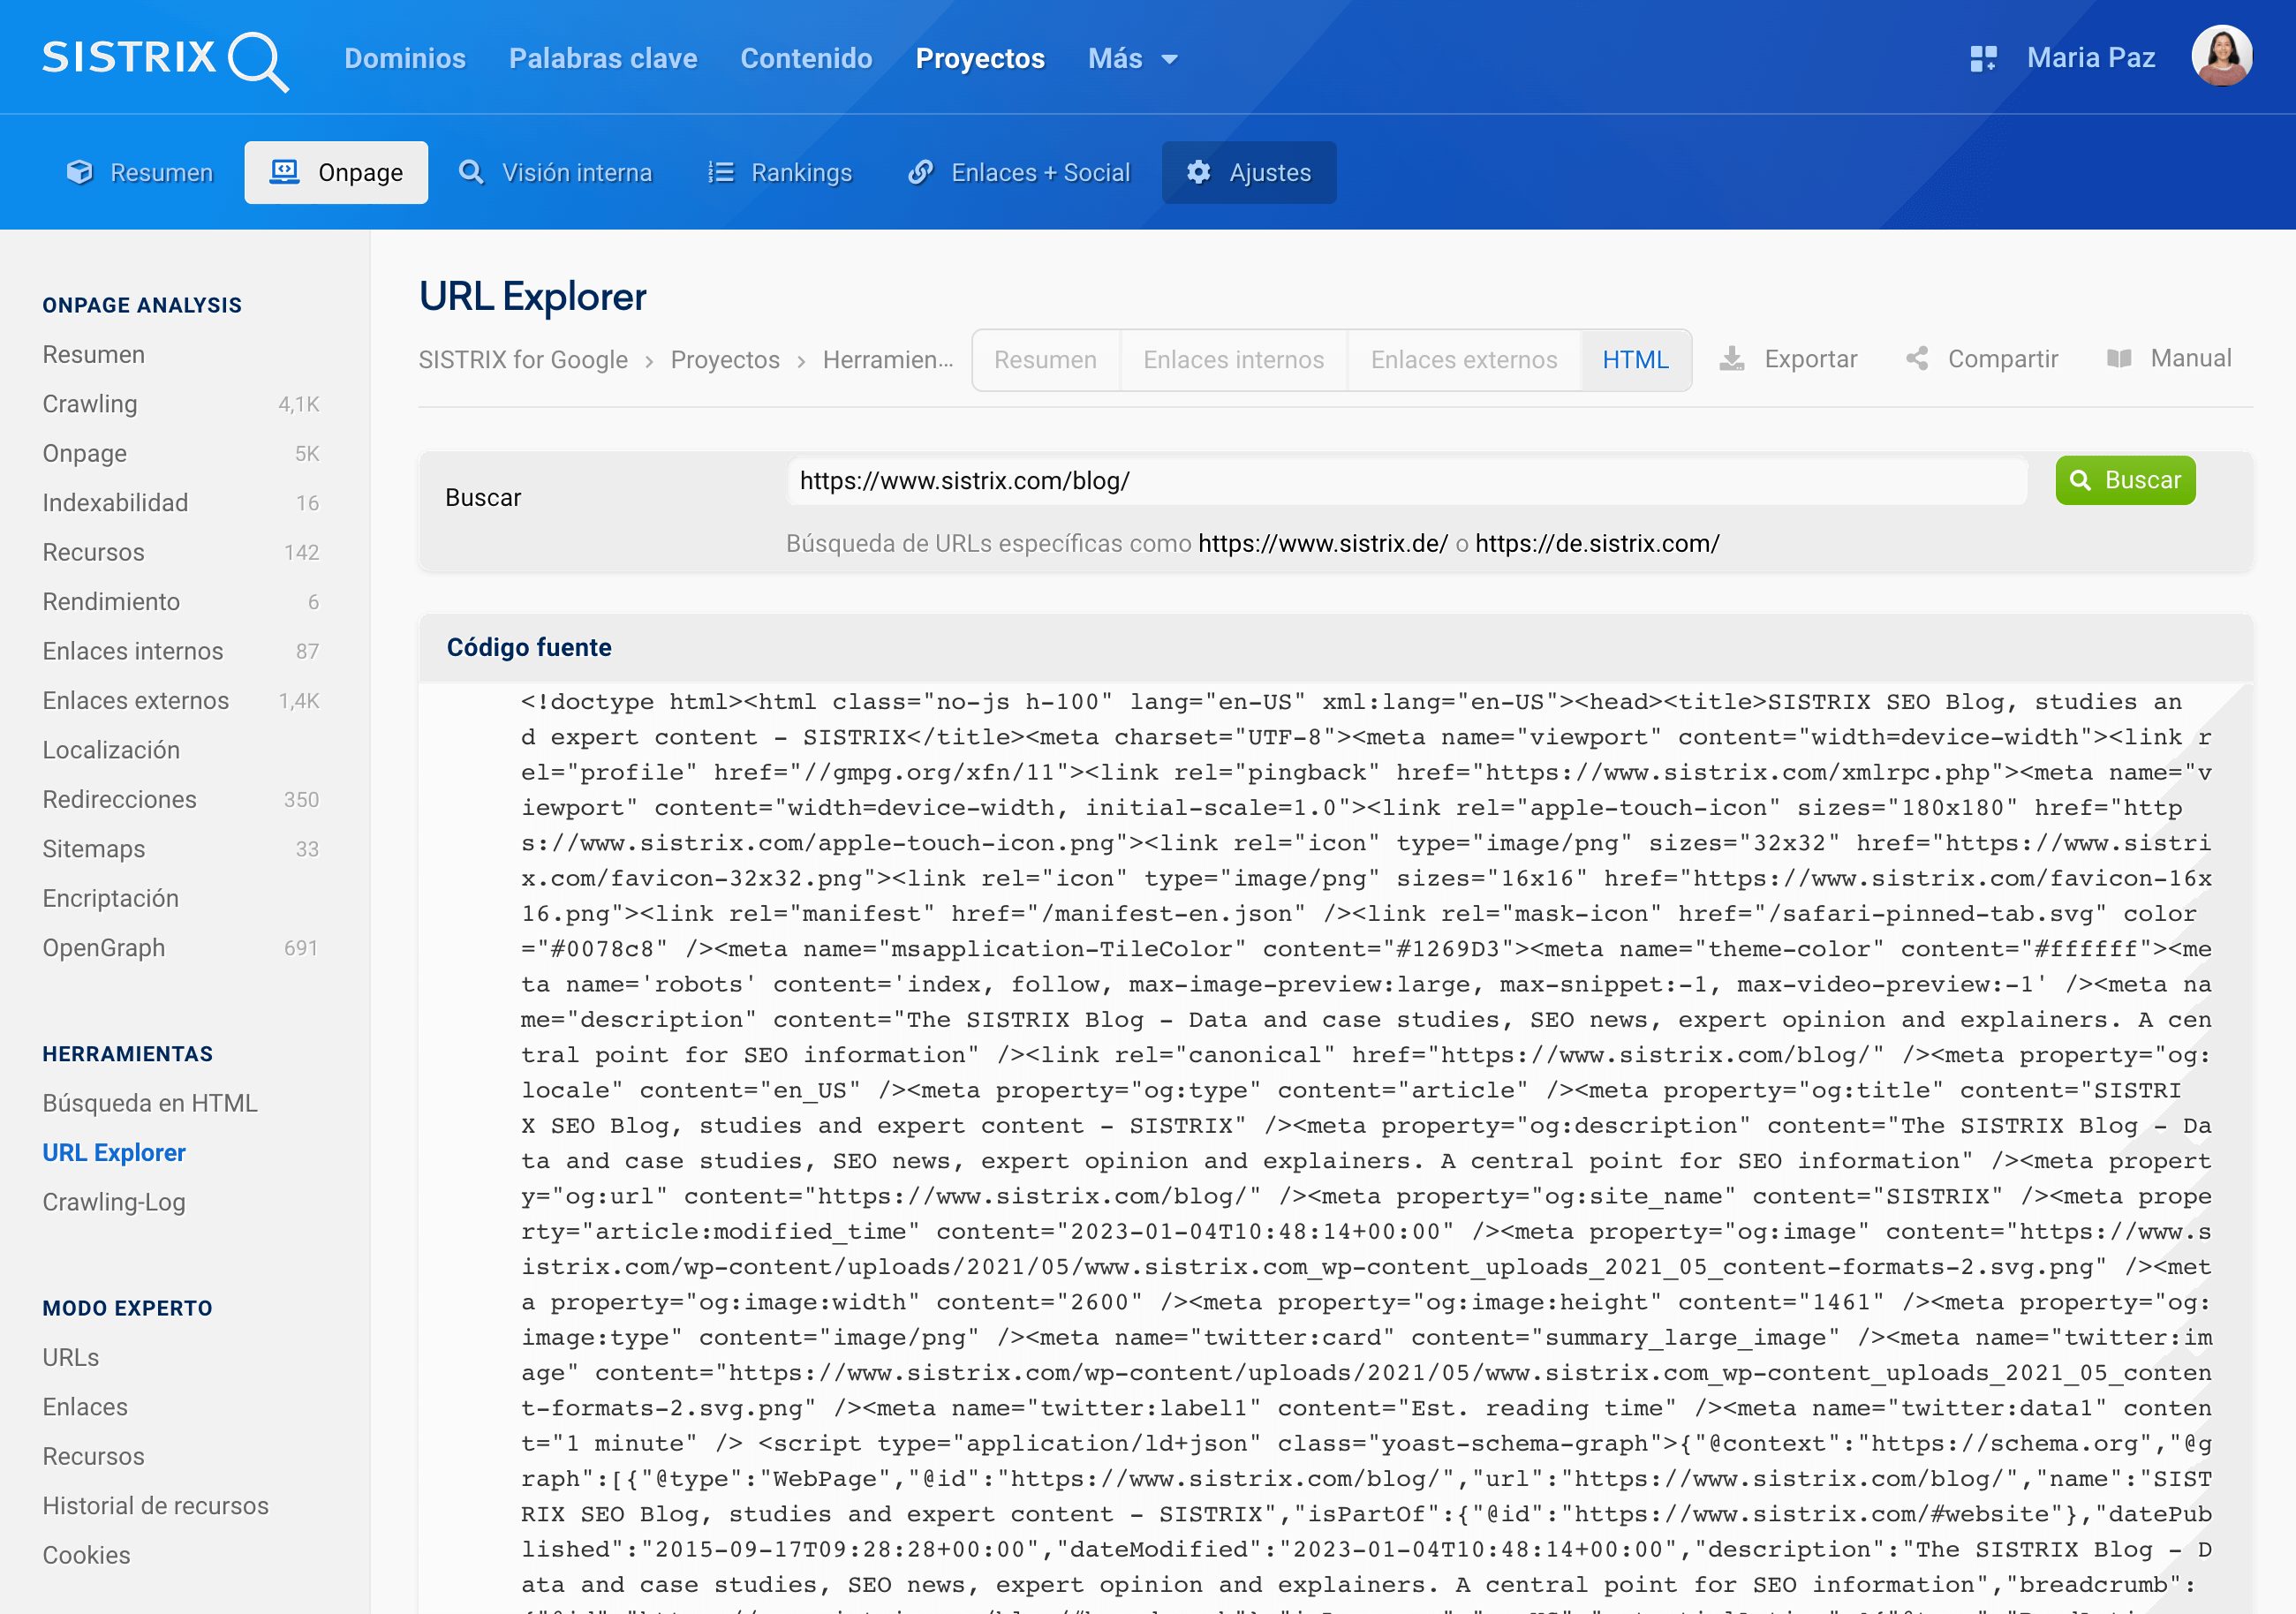 Apartado HTML de la función "URL Explorer" "https://www.sistrix.com/blog/"